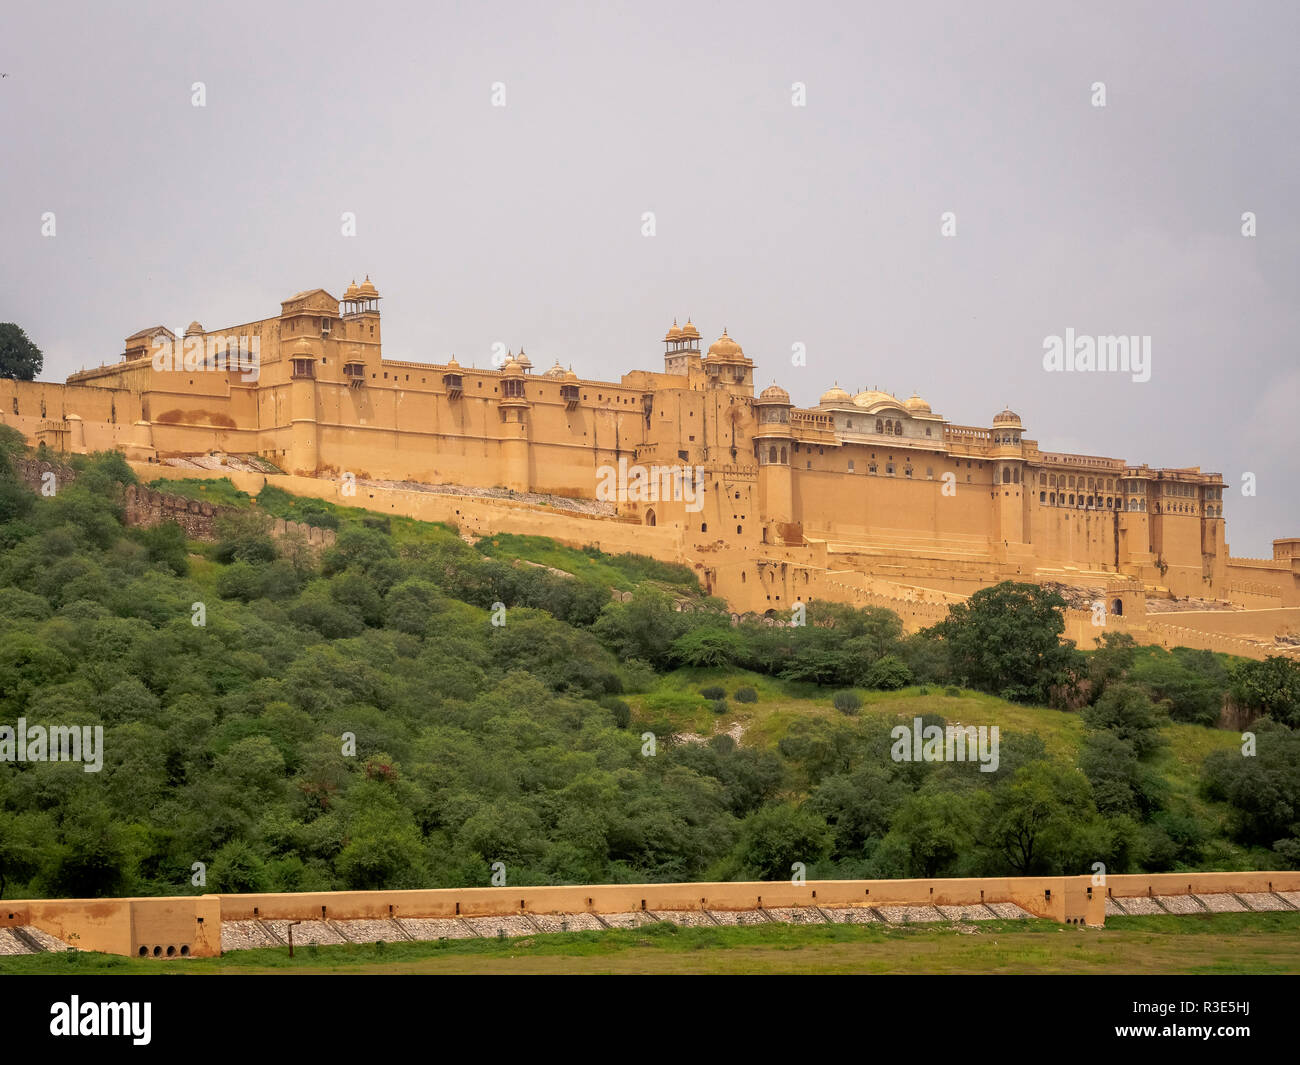 Ein Weitwinkel Tag geschossen von Amer Fort/Fort Amber in Jaipur, Rajasthan, Indien Stockfoto